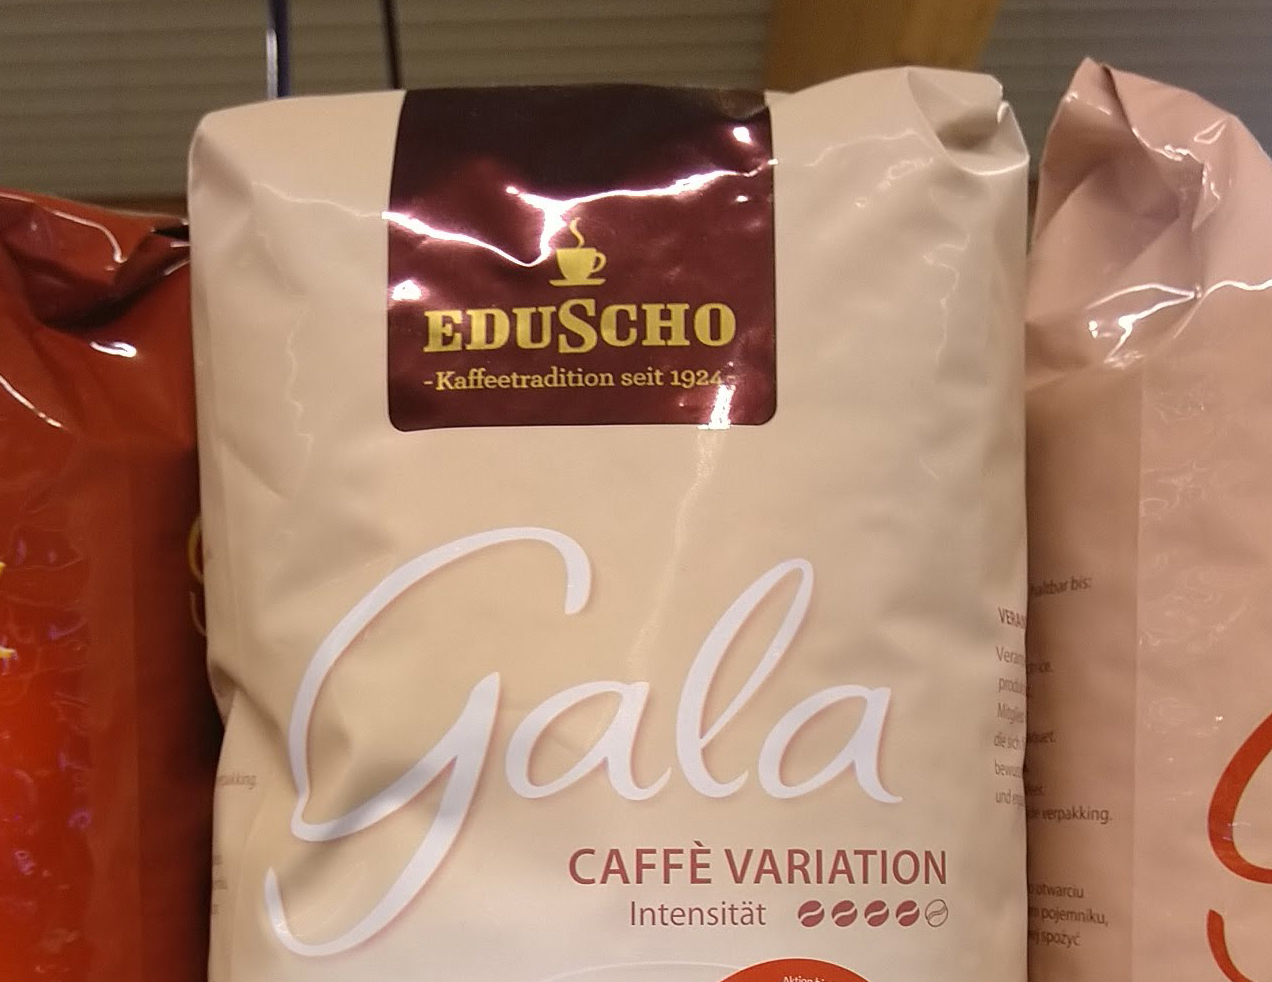 Eduscho Gala Kaffee kaufen, Urlaubsgeld gewinnen - Kassenbon hochladen